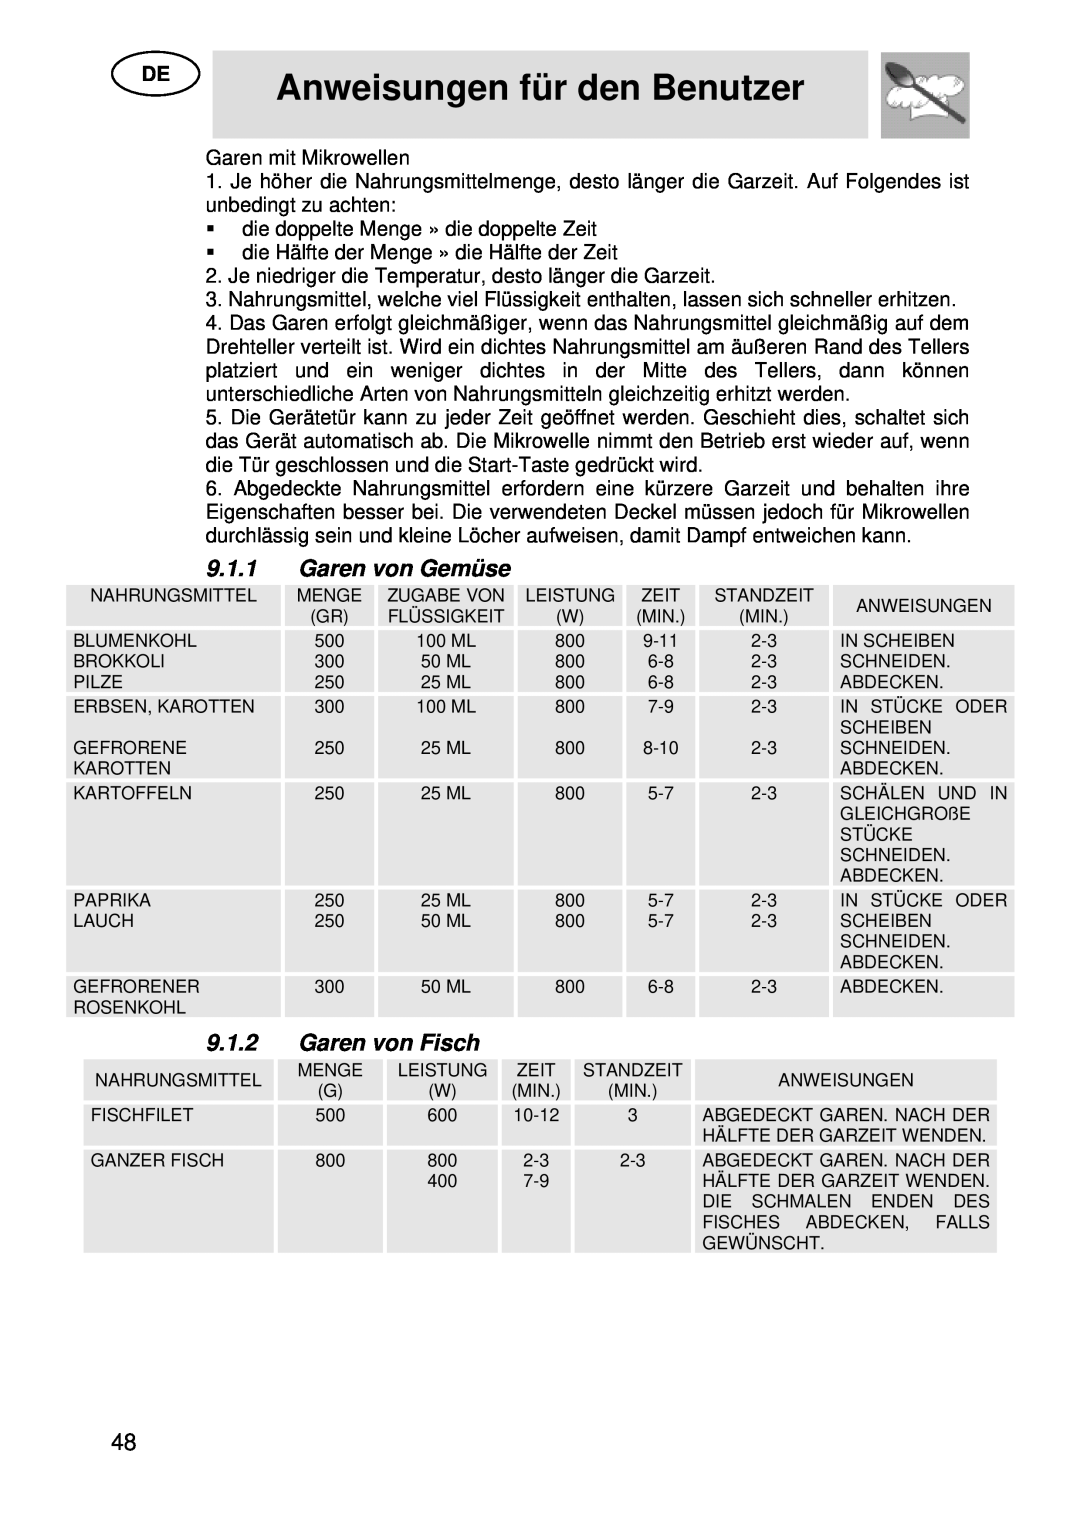 Smeg S45MX manual 9.1.1, Garen von Gemüse, 9.1.2, Garen von Fisch, Anweisungen für den Benutzer 